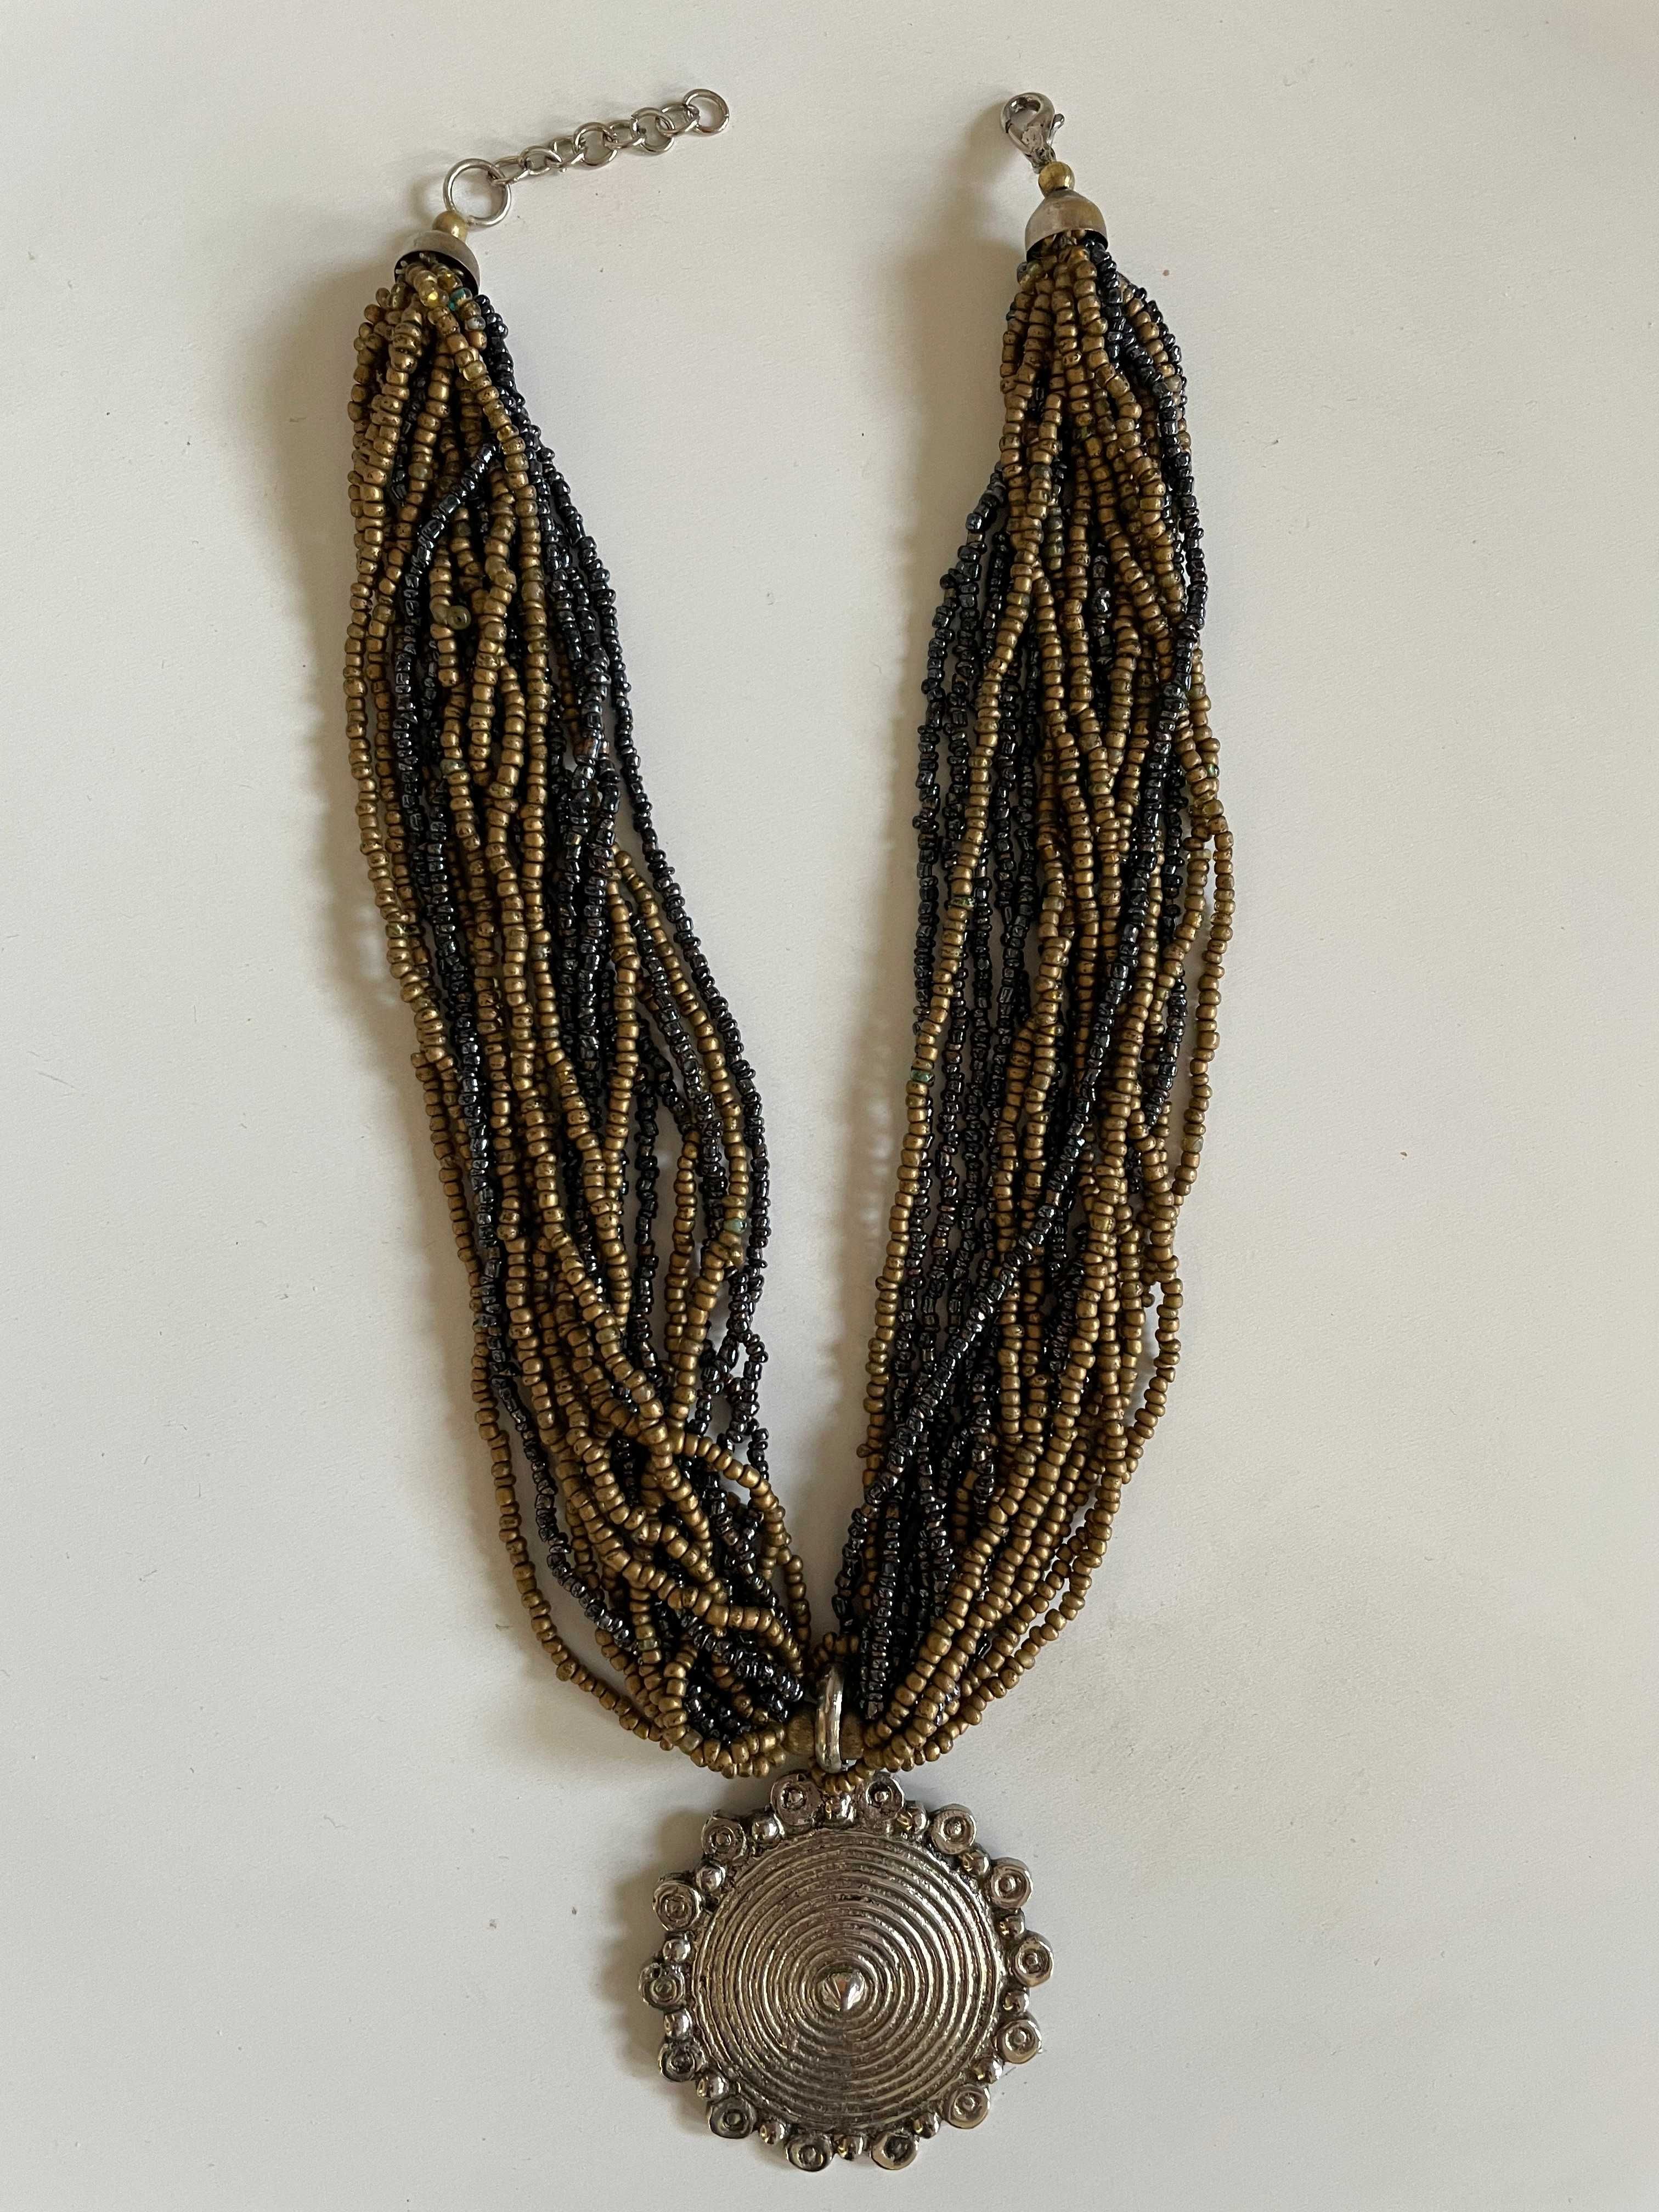 naszyjnik ze sznurami korali perłowych w złoto-beżowo-brązowej tonacji